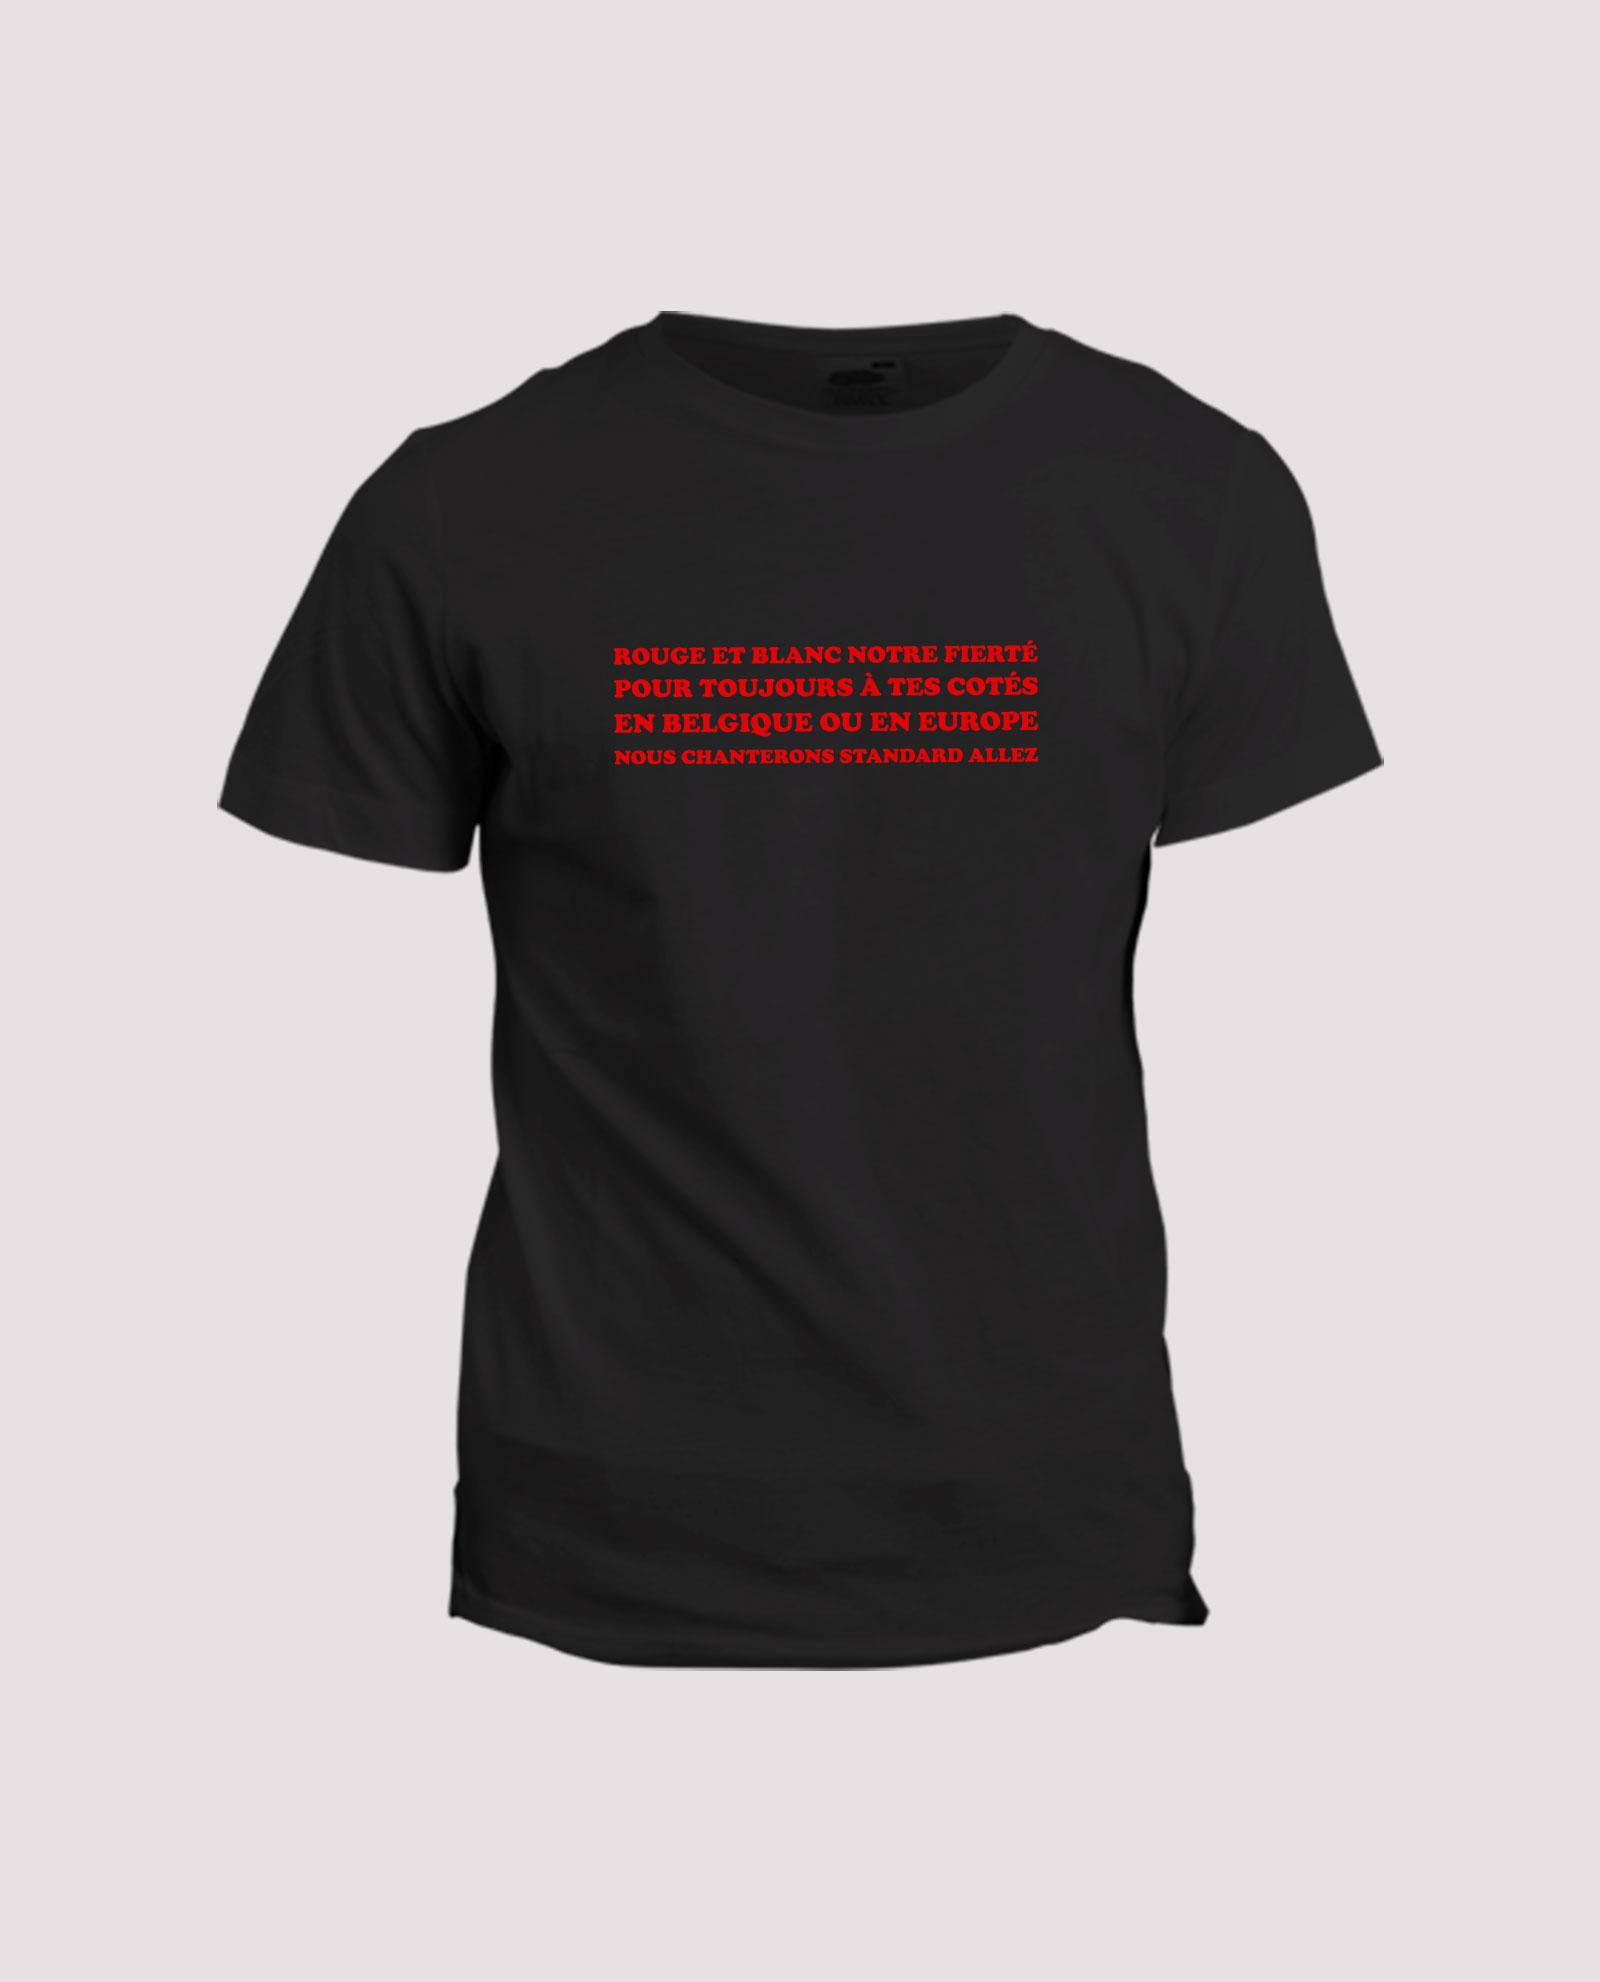 la-ligne-shop-t-shirt-chant-supporter-belgique-standard-de-liege-rouge-et-blanc-nortre-fierte